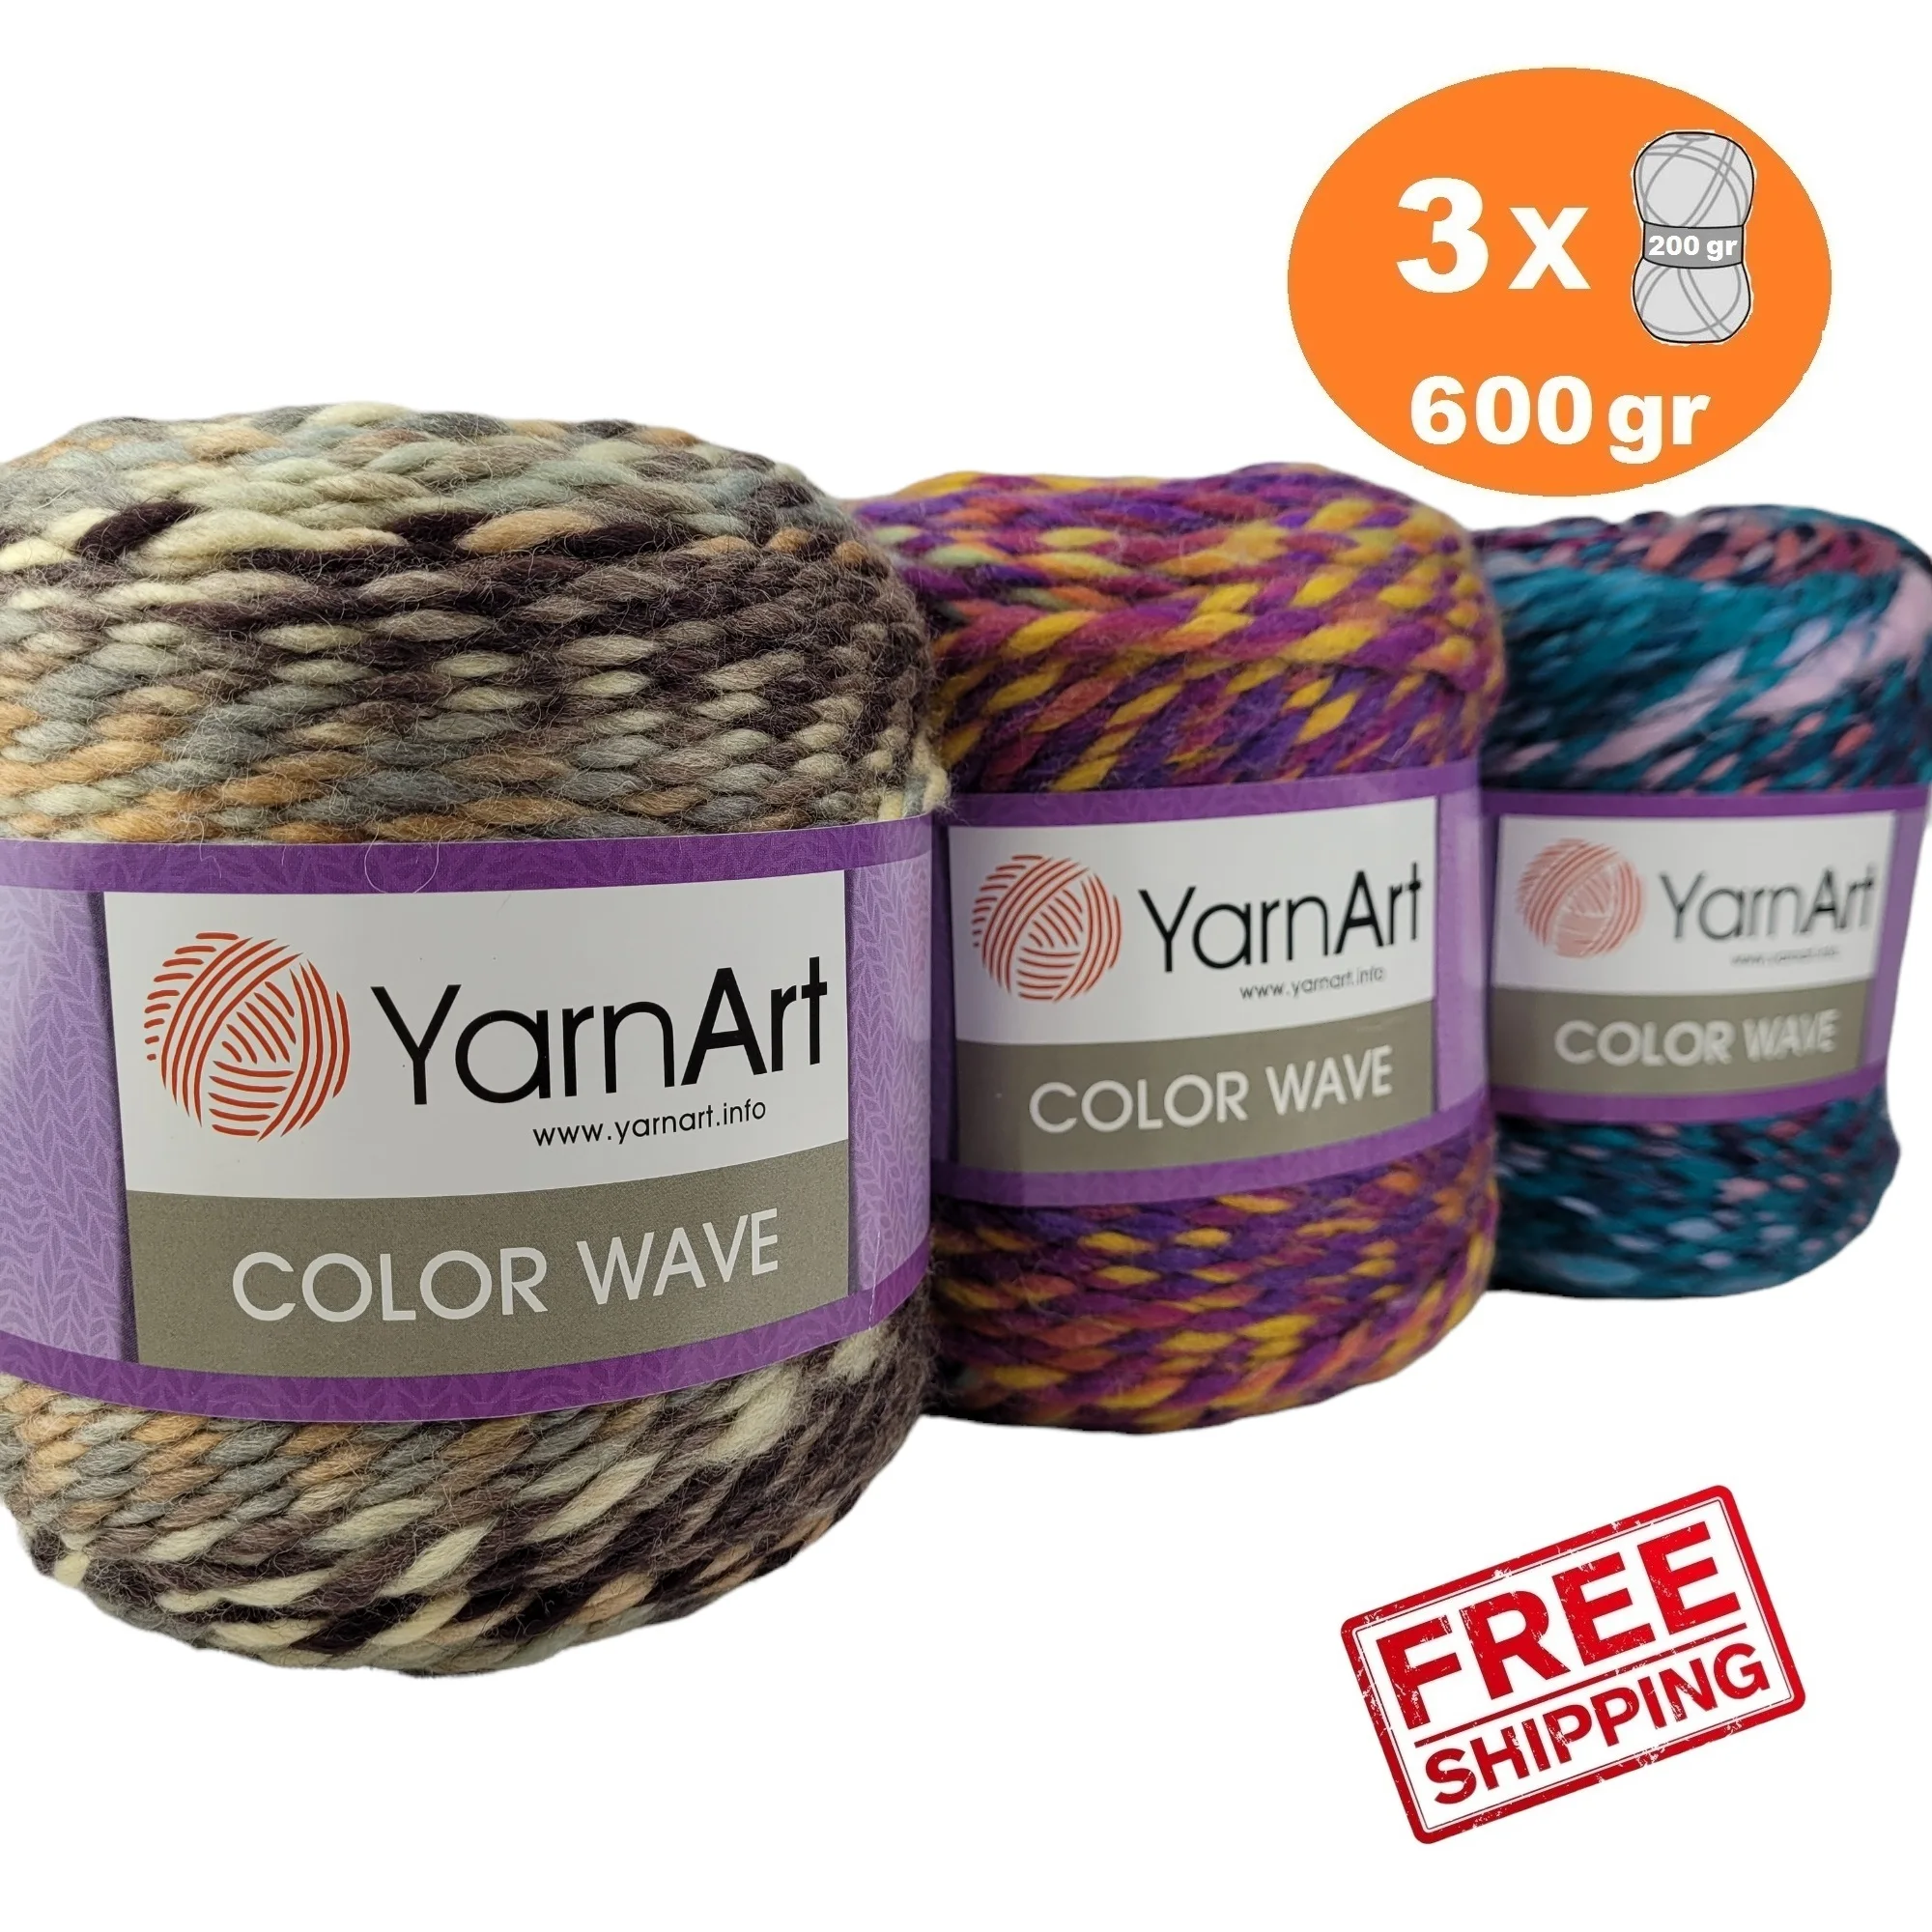 

Yarnart Color Wave Cake Yarn %20 Wool 3x200gr-160mt Knitting Crochet Winter Autumn Beanie Shawl Cowl Scarf Women Men DIY Fantasy